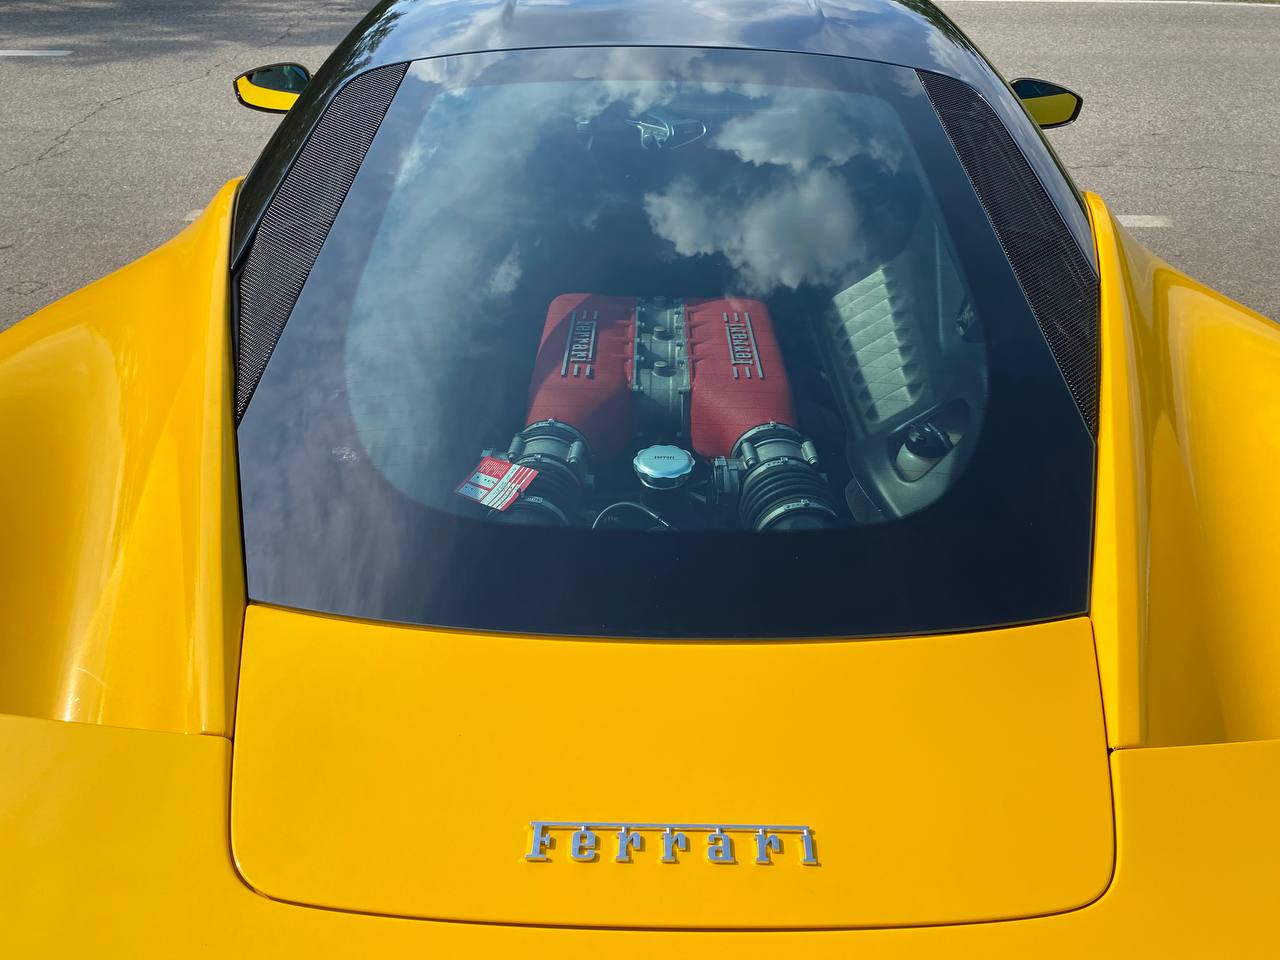 Ferrari 458 ITALIA V8 4497,00 aspirato – 416 kw – 570 cv Colore: Nero Daytona Immatricolazione 01/2011 Km totali: 66.000 Cambio F1 con sequenziale al volante *Service Completo Ferrari + fatture + libretto service*  *ULTIMO TAGLIANDO ESEGUITO IL 23/06/2022